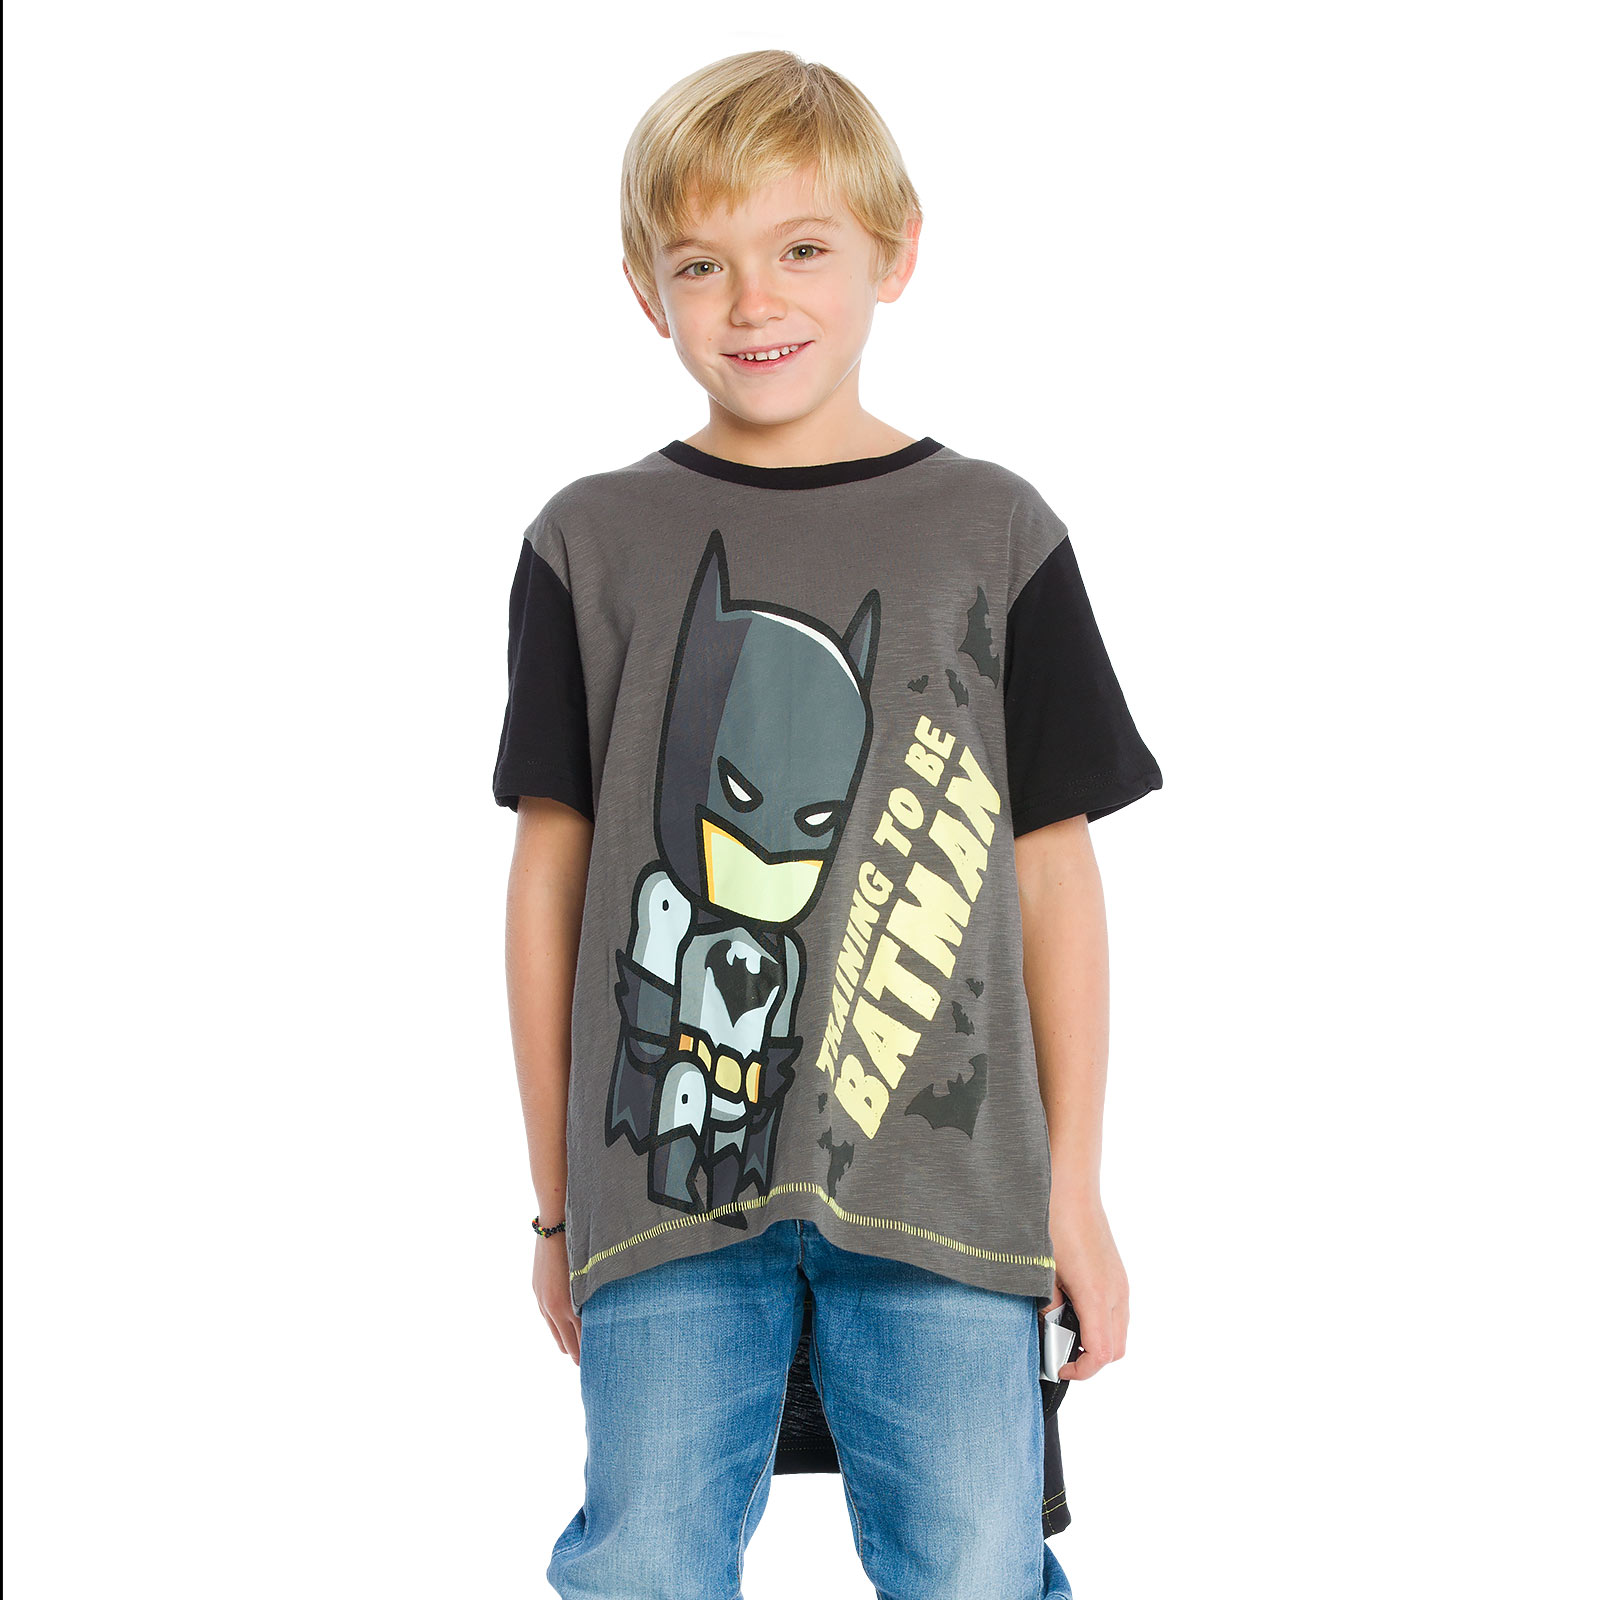 Batman - Children's T-Shirt with Cape black